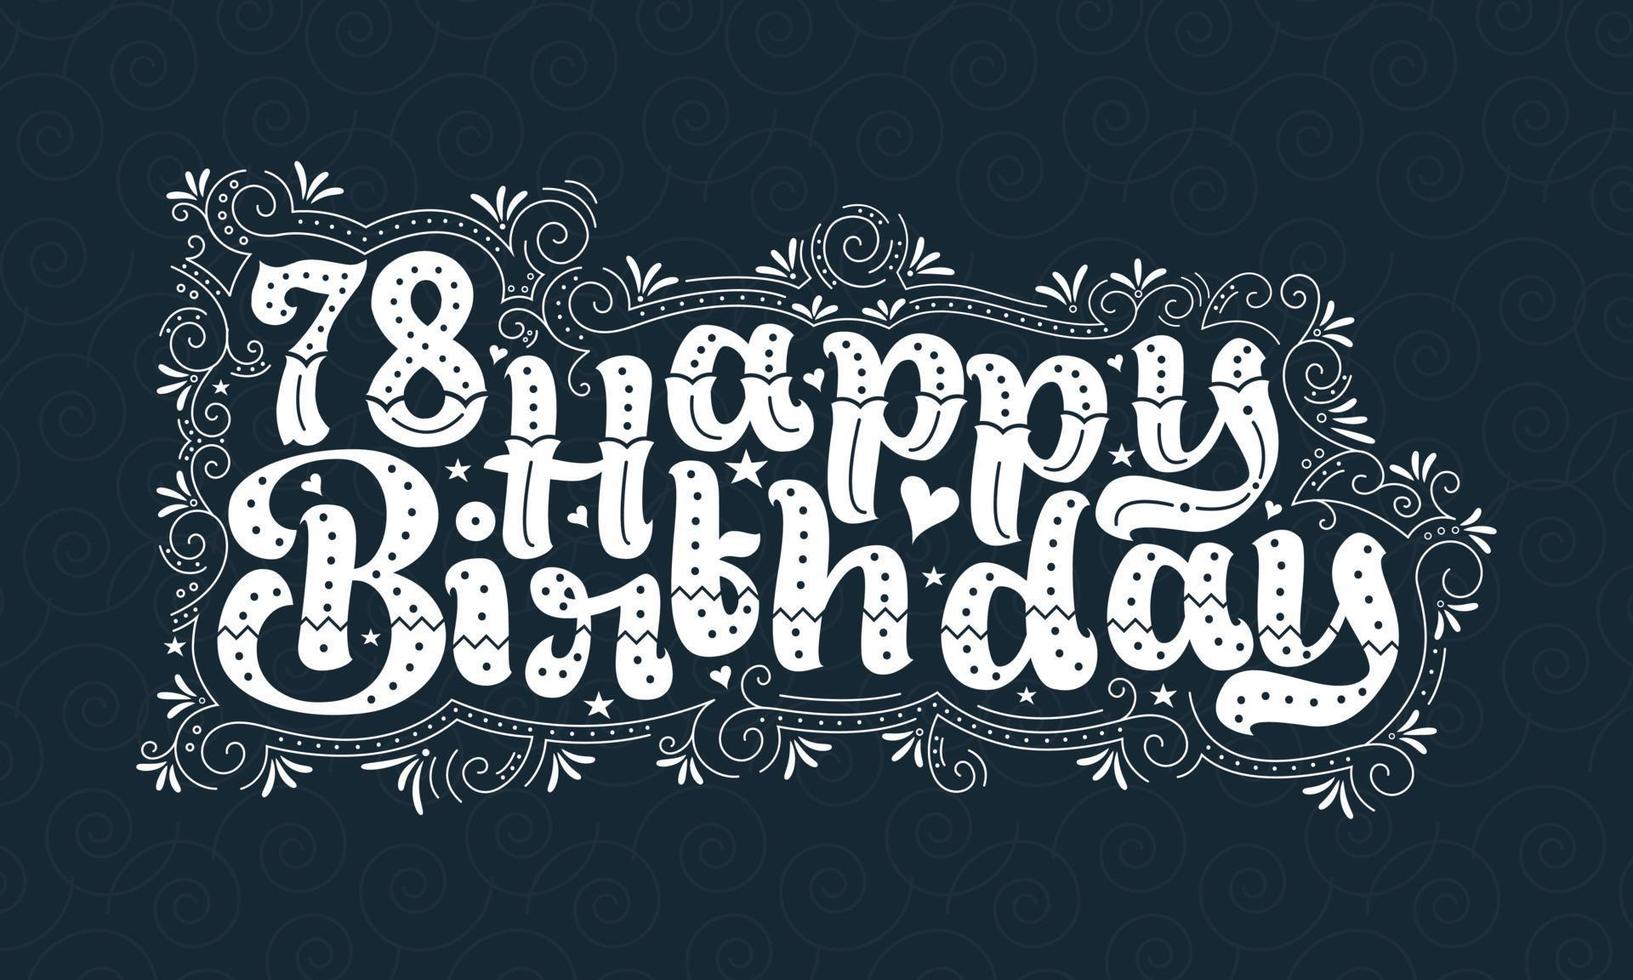 78:e grattis på födelsedagen bokstäver, 78 års födelsedag vacker typografidesign med prickar, linjer och löv. vektor